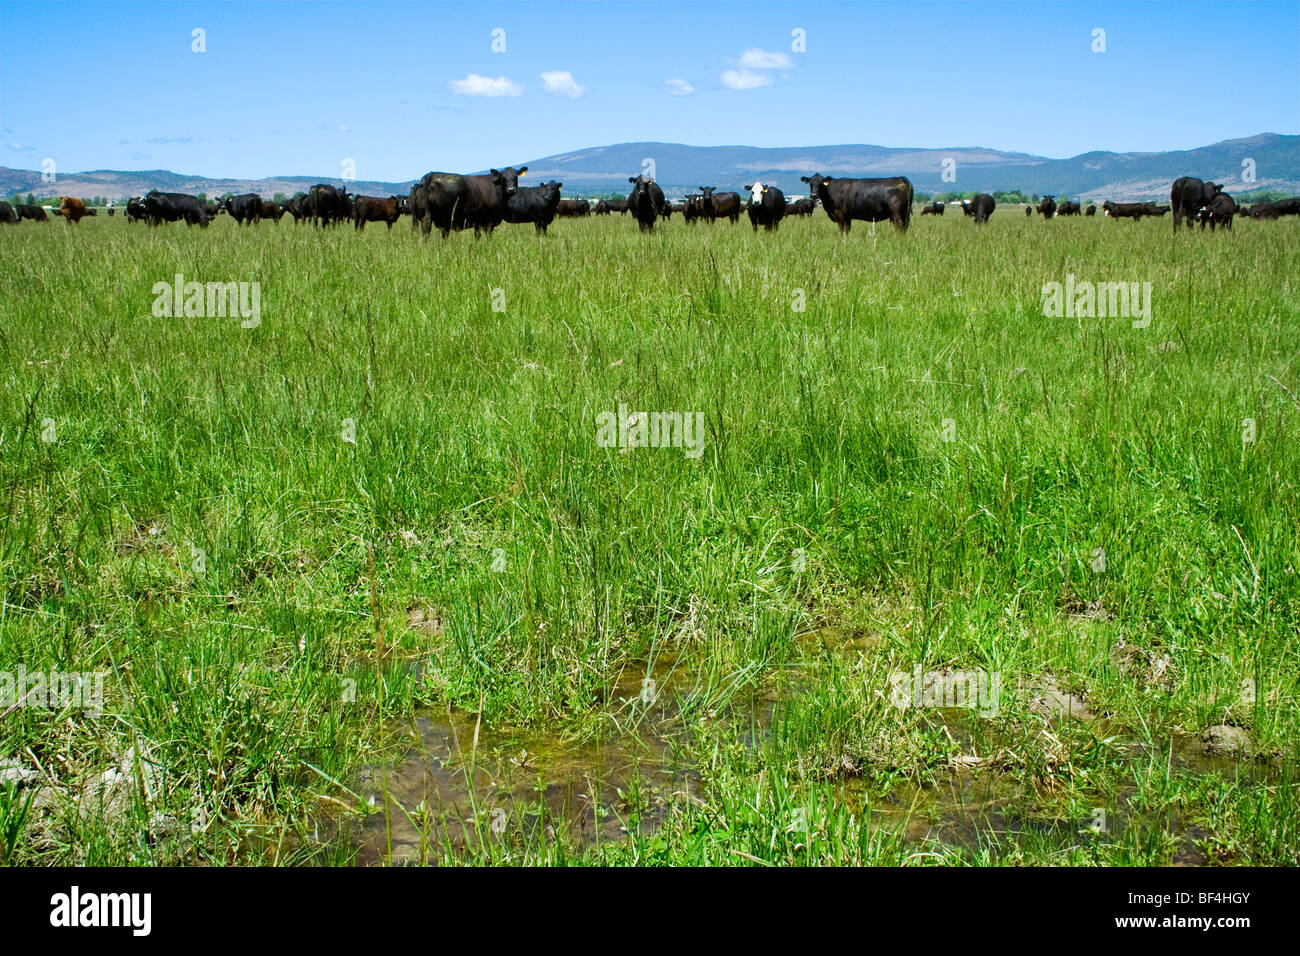 Ganadería - Manada de ganado vacuno Angus negra sobre una pradera verde / Norte de California, Estados Unidos. Foto de stock